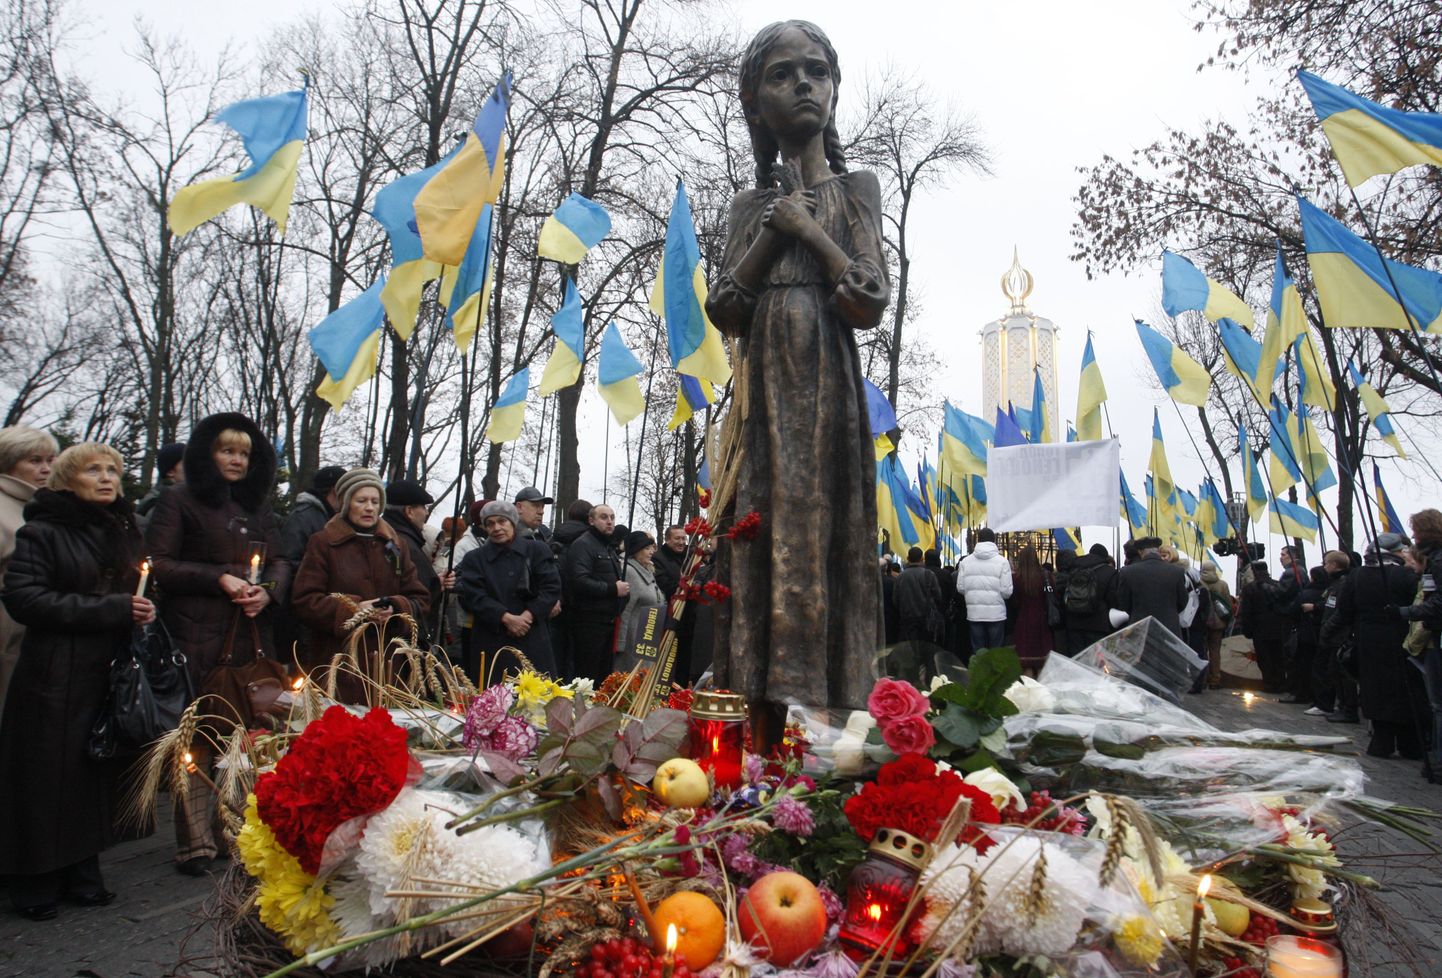 Ukrainlased süütasid küünla ning asetasid lilled näljahäda ehk holodomori mälestuseks rajatud kuju juurde, mis sümboliseerib tüdrukut, kes surub oma rinnale viljavihku.